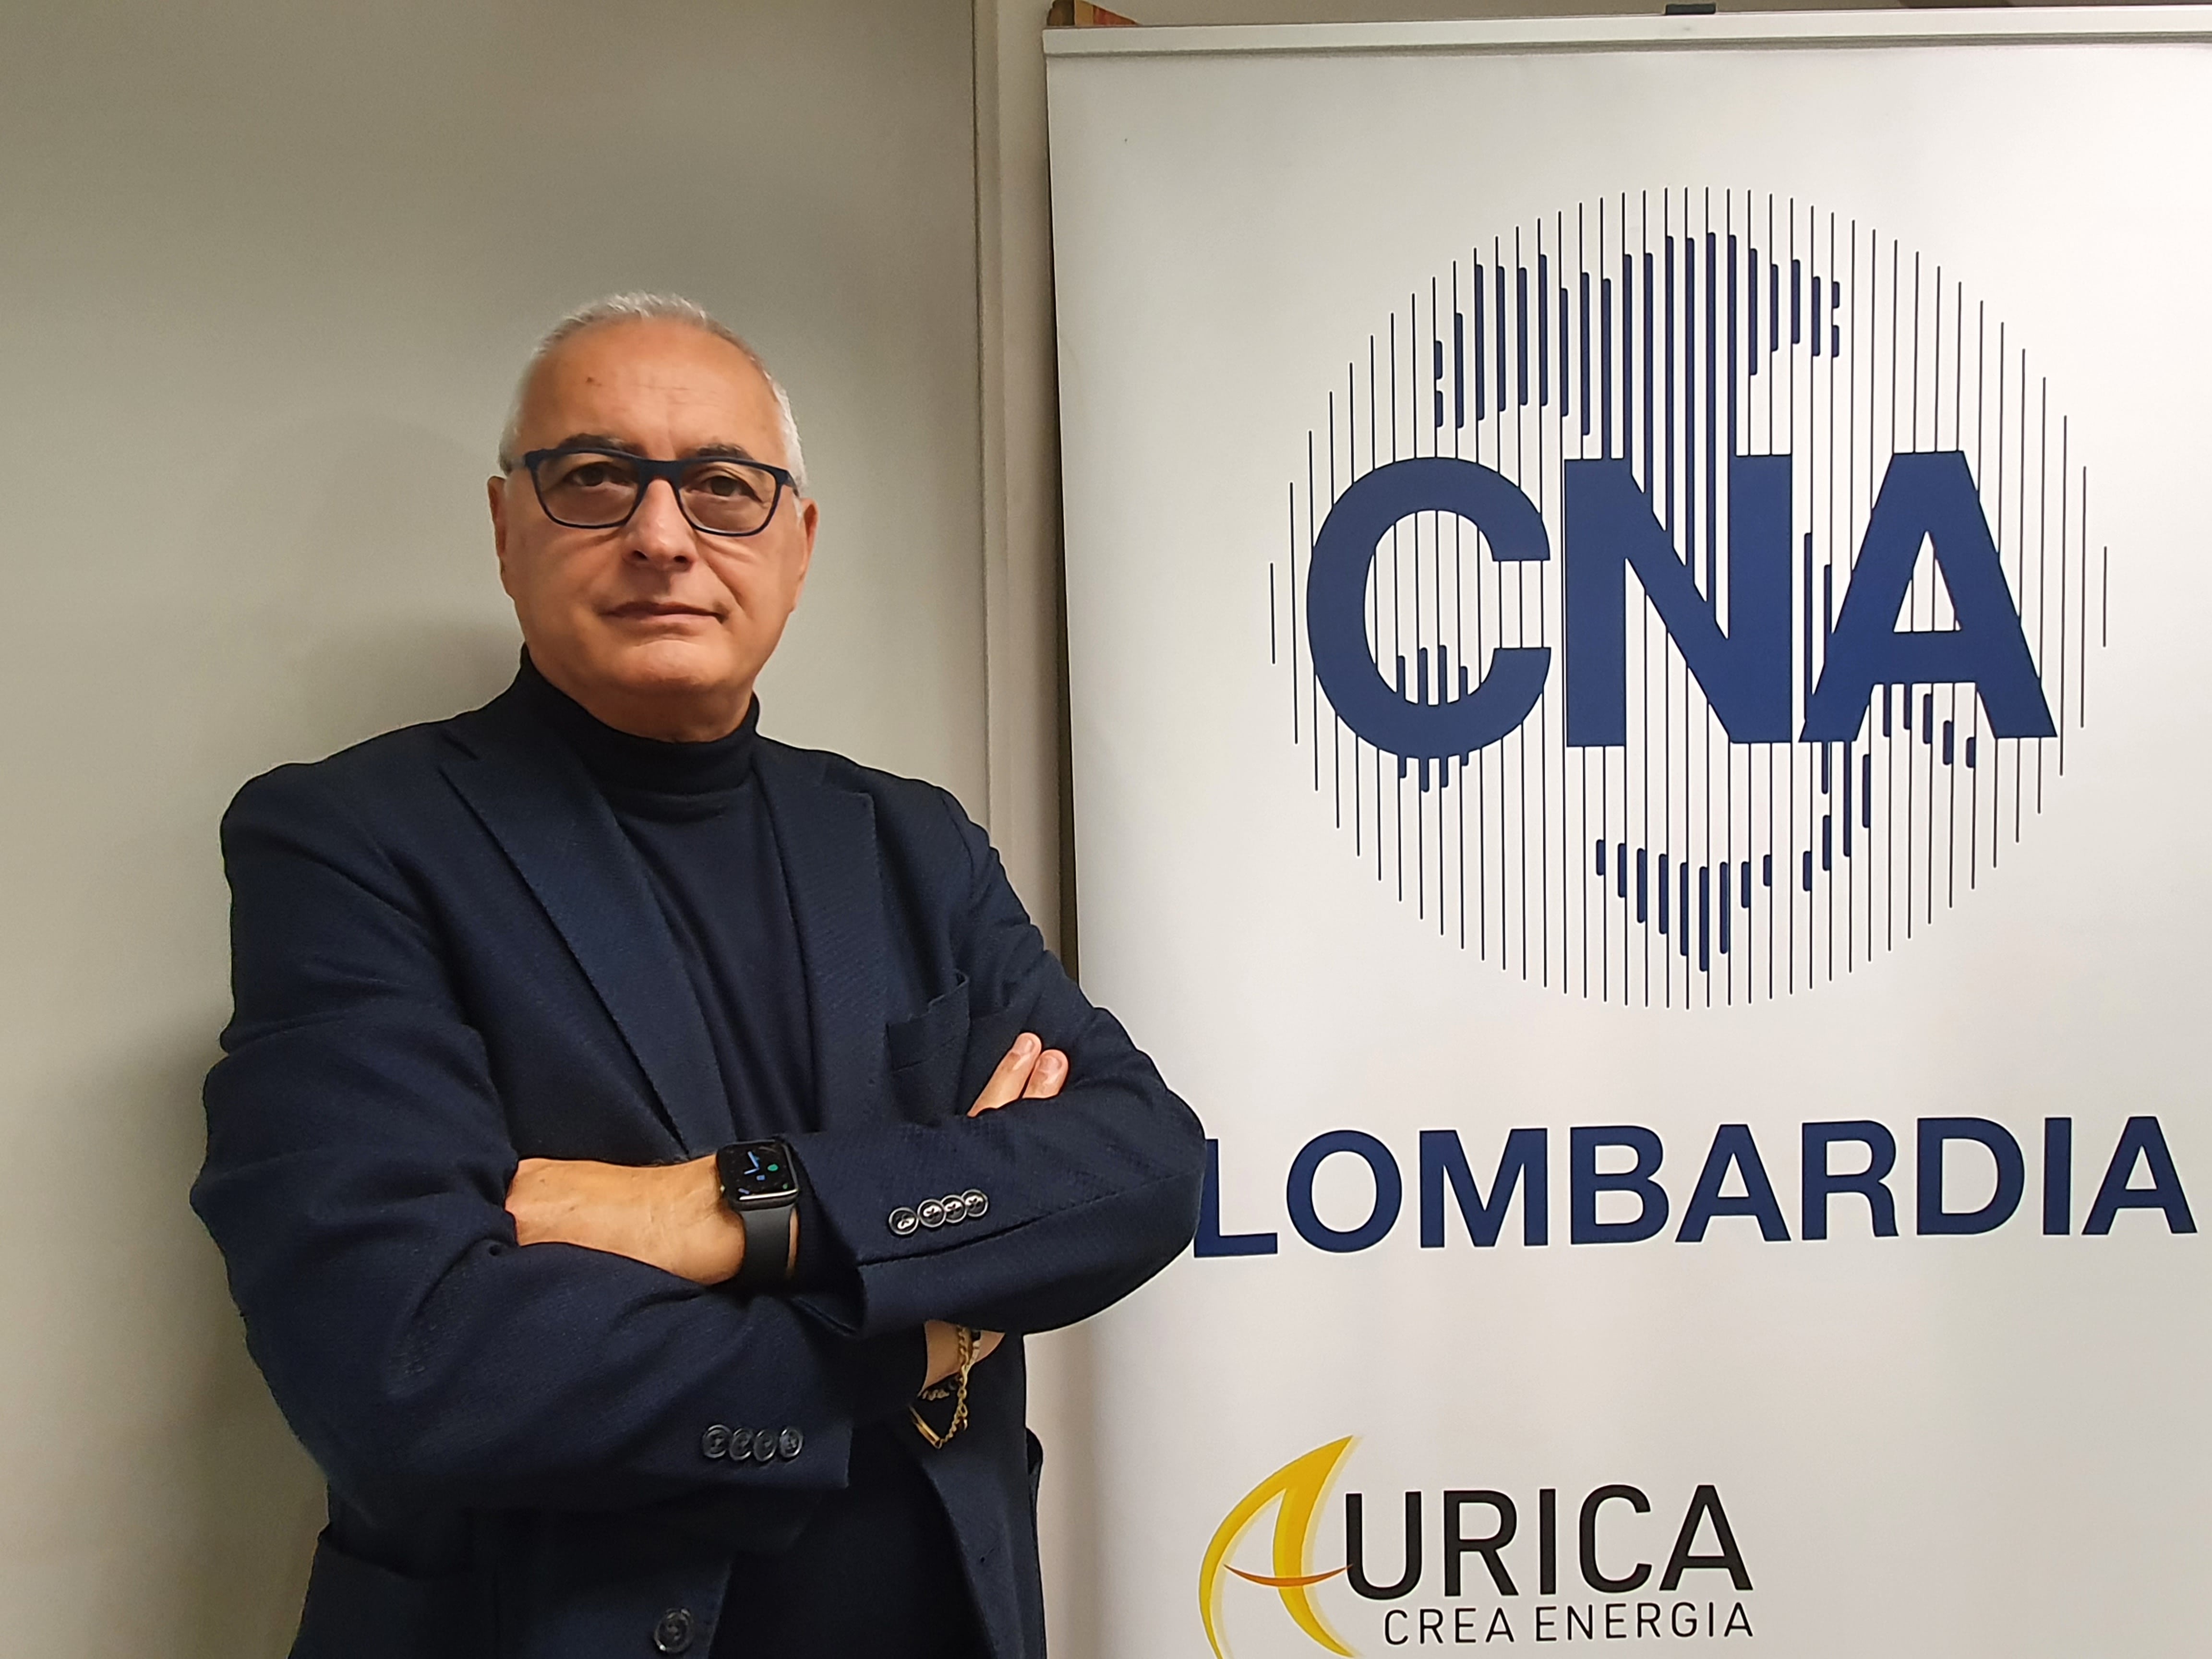 CNA Lombardia: «Il vaccino obbligatorio è l'unica soluzione per tutelare le attività economiche e sociali»